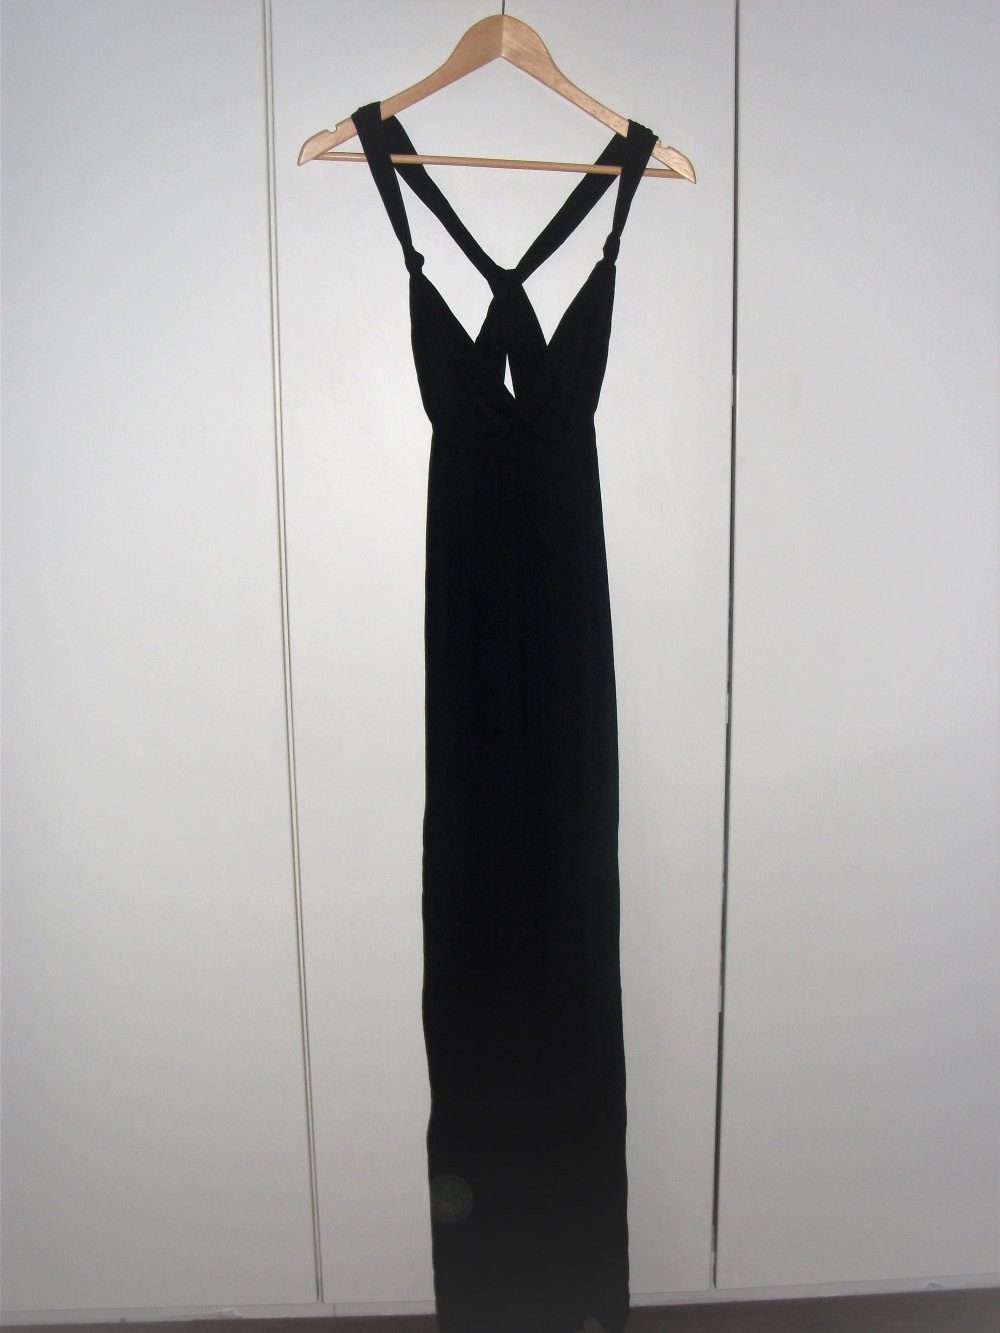 17 Einfach Langes Schwarzes Kleid Boutique10 Cool Langes Schwarzes Kleid Design